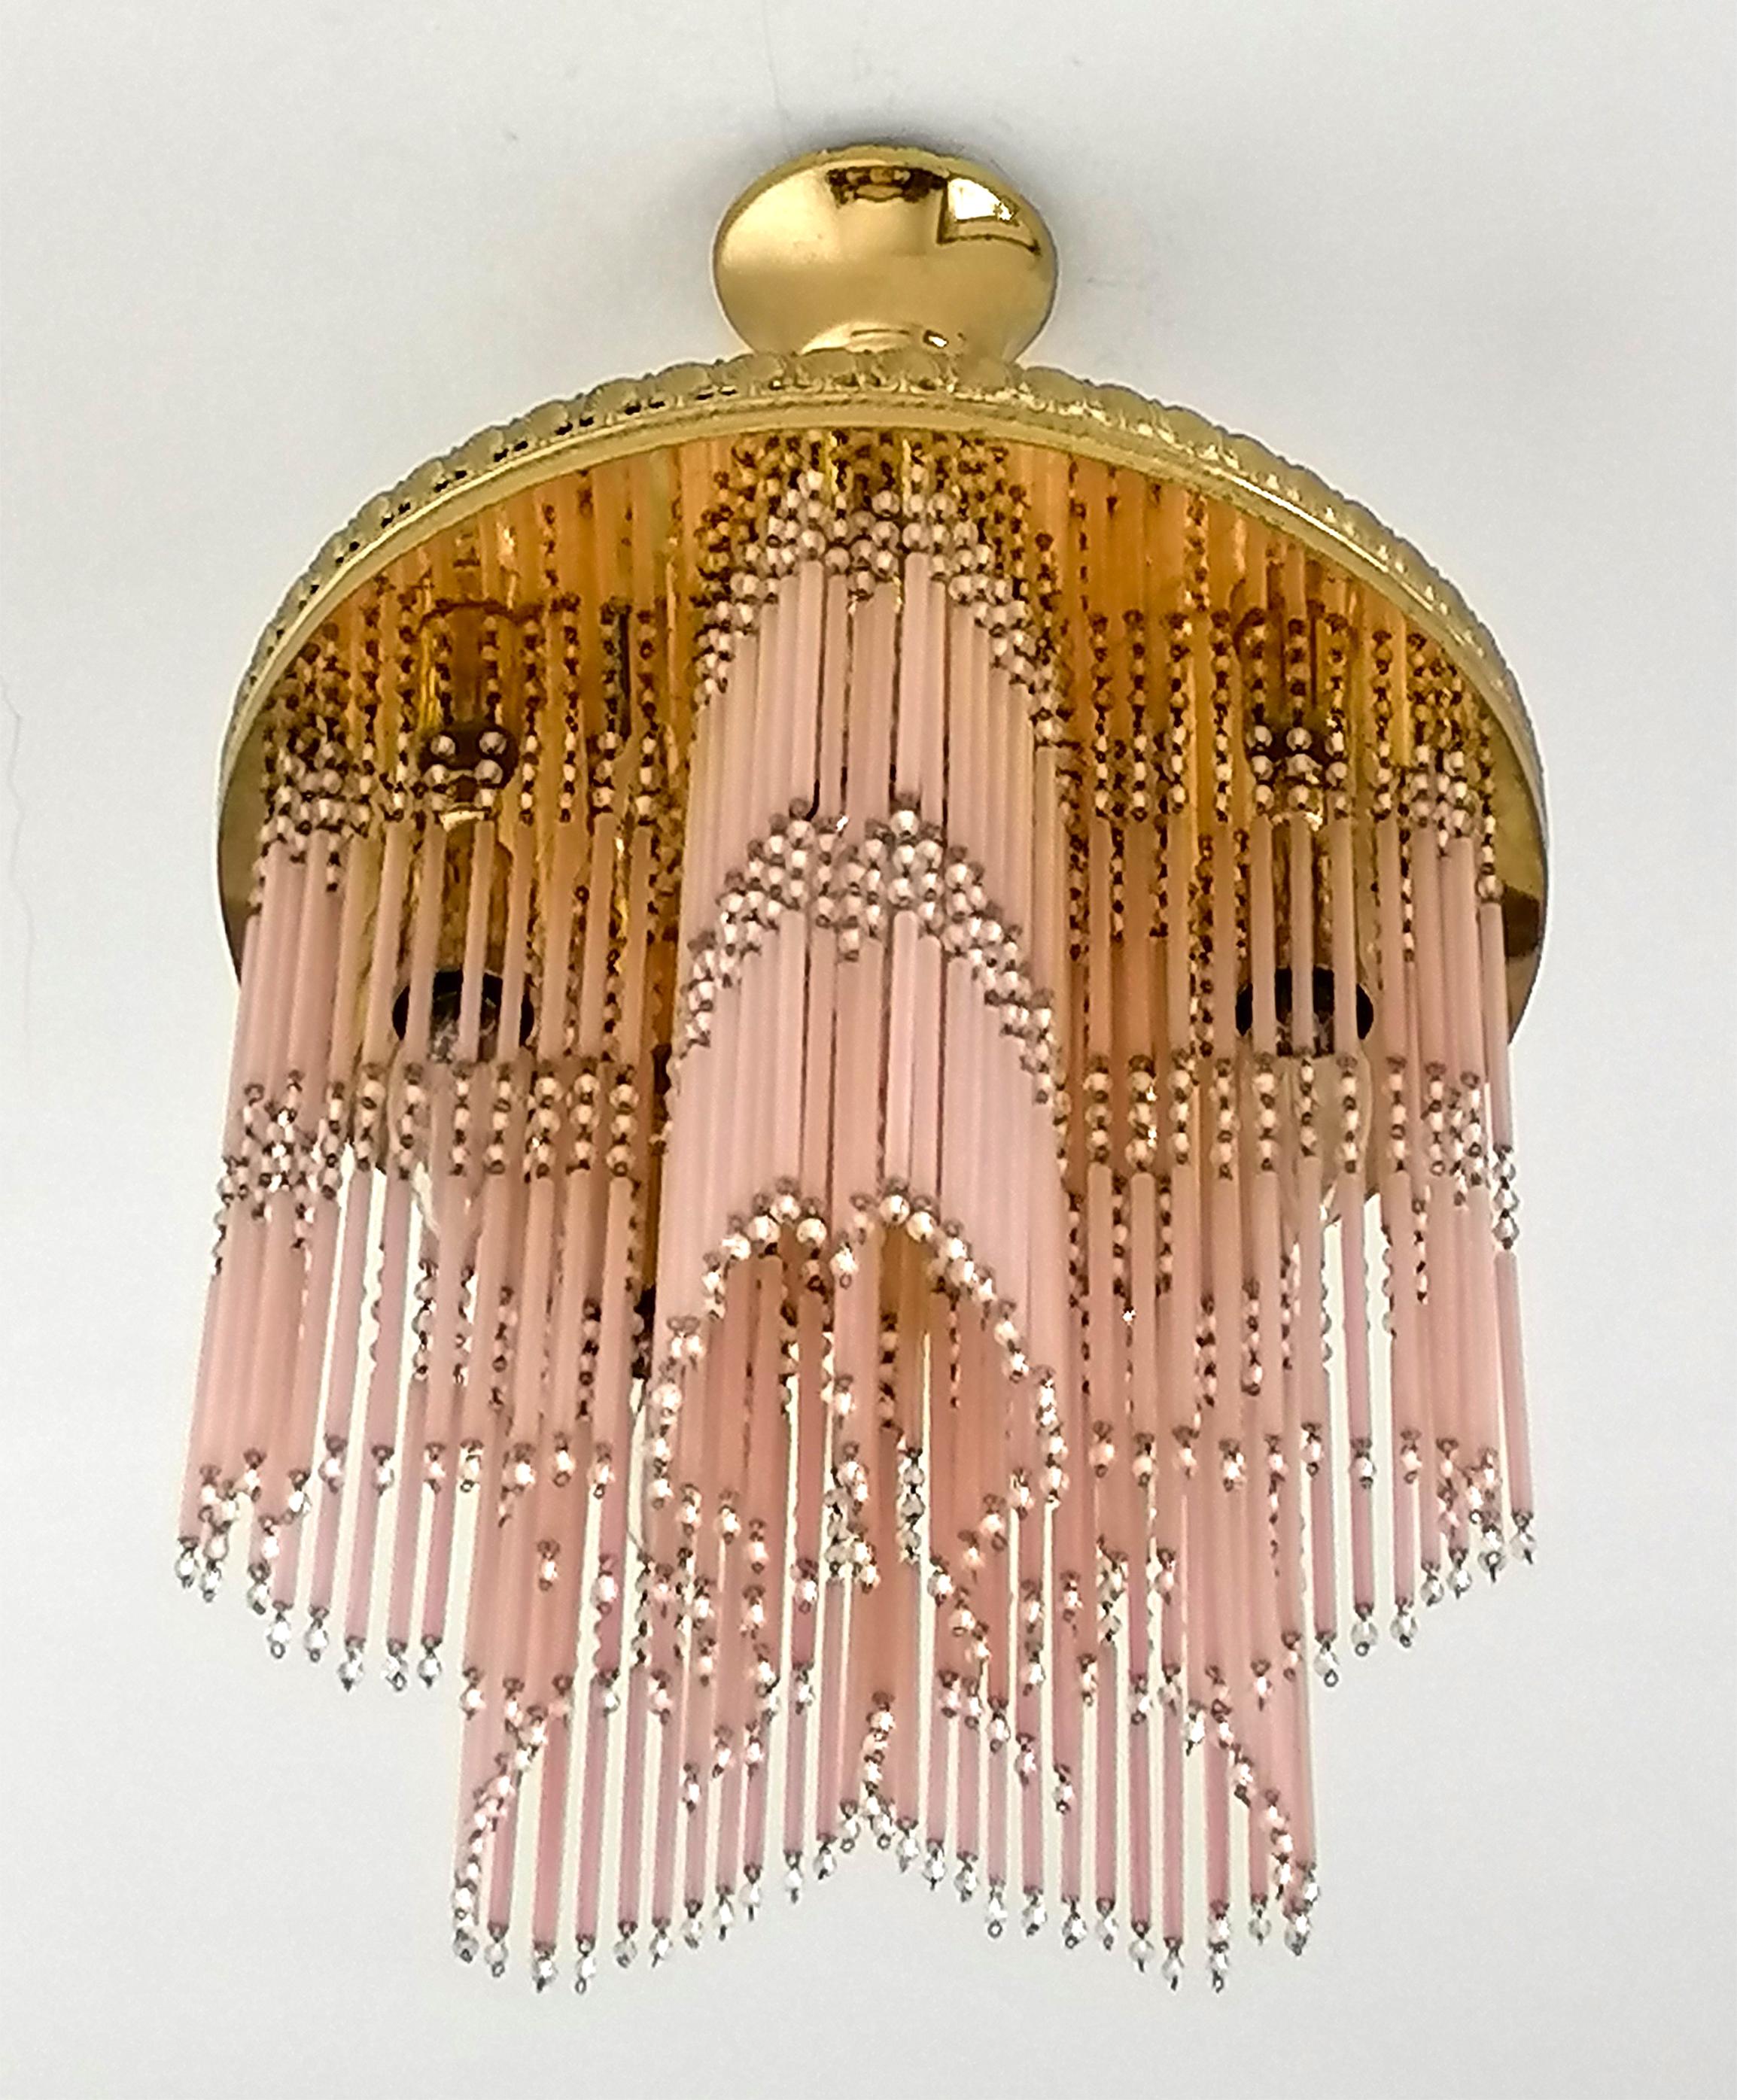 Fabuleux lustre doré Hollywood Regency en forme d'étoile avec des franges de paille perlée en verre de Murano rose. Depuis le milieu du 20e siècle. Magnifique effet miroir. 
Dimensions :
Diamètre : 39 cm
Hauteur : 21 in / 53 cm 
Cinq ampoules E14/